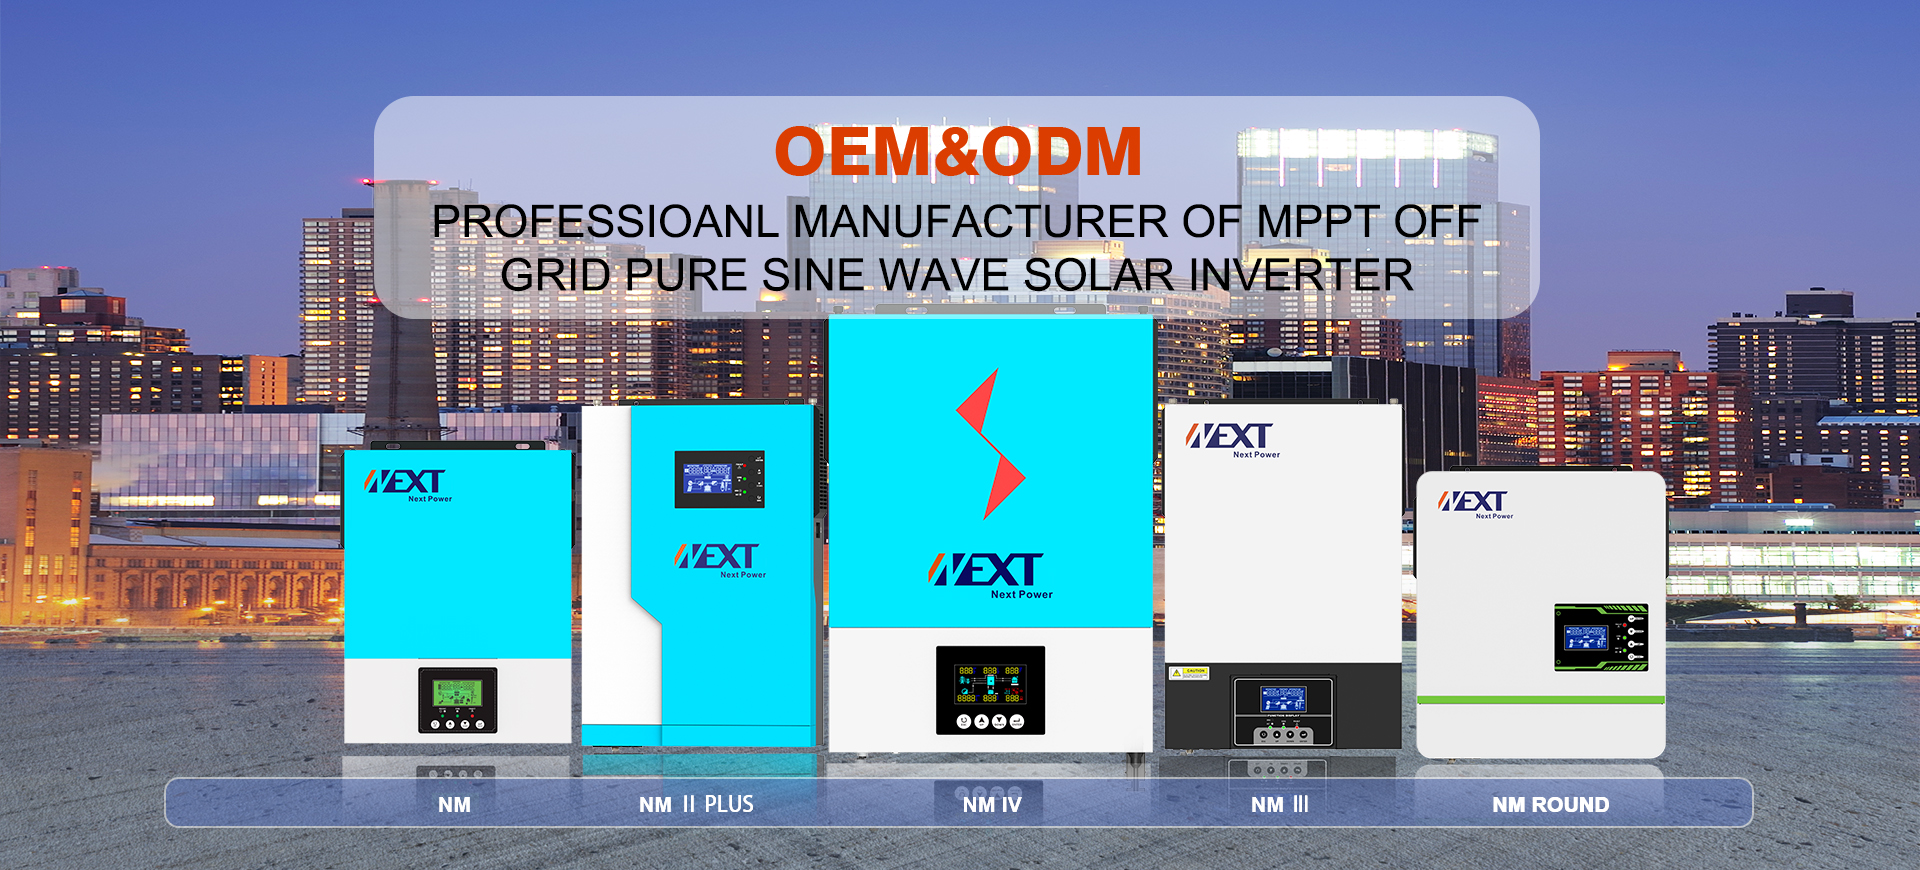 3500 Watt Solar Inverter For House